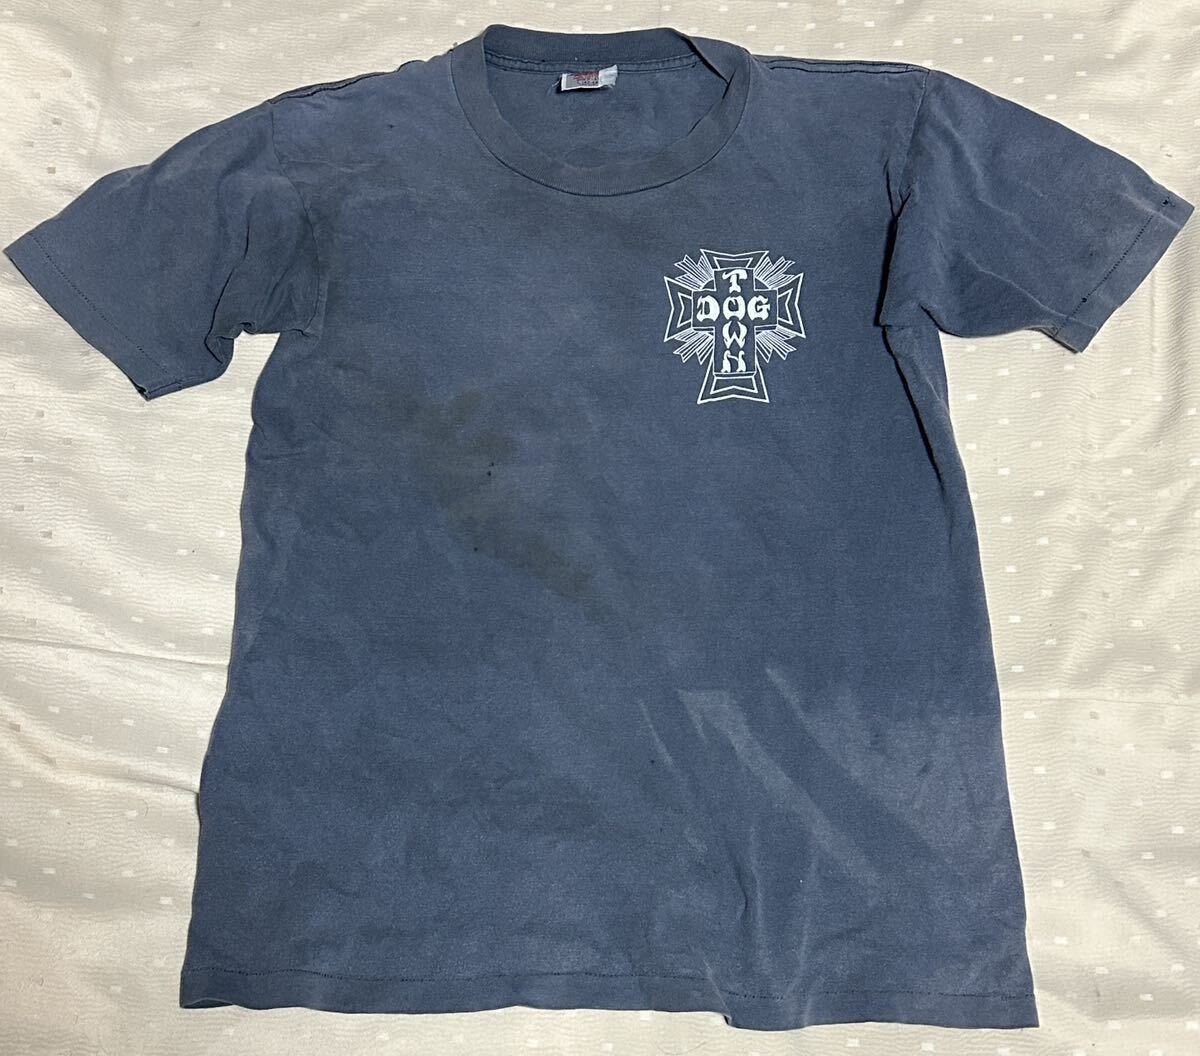 【送料無料】’90s ‘80s VINTAGE T-Shirt / DOG TOWN ALBA / ONEITA Made in USA / size : L_画像2